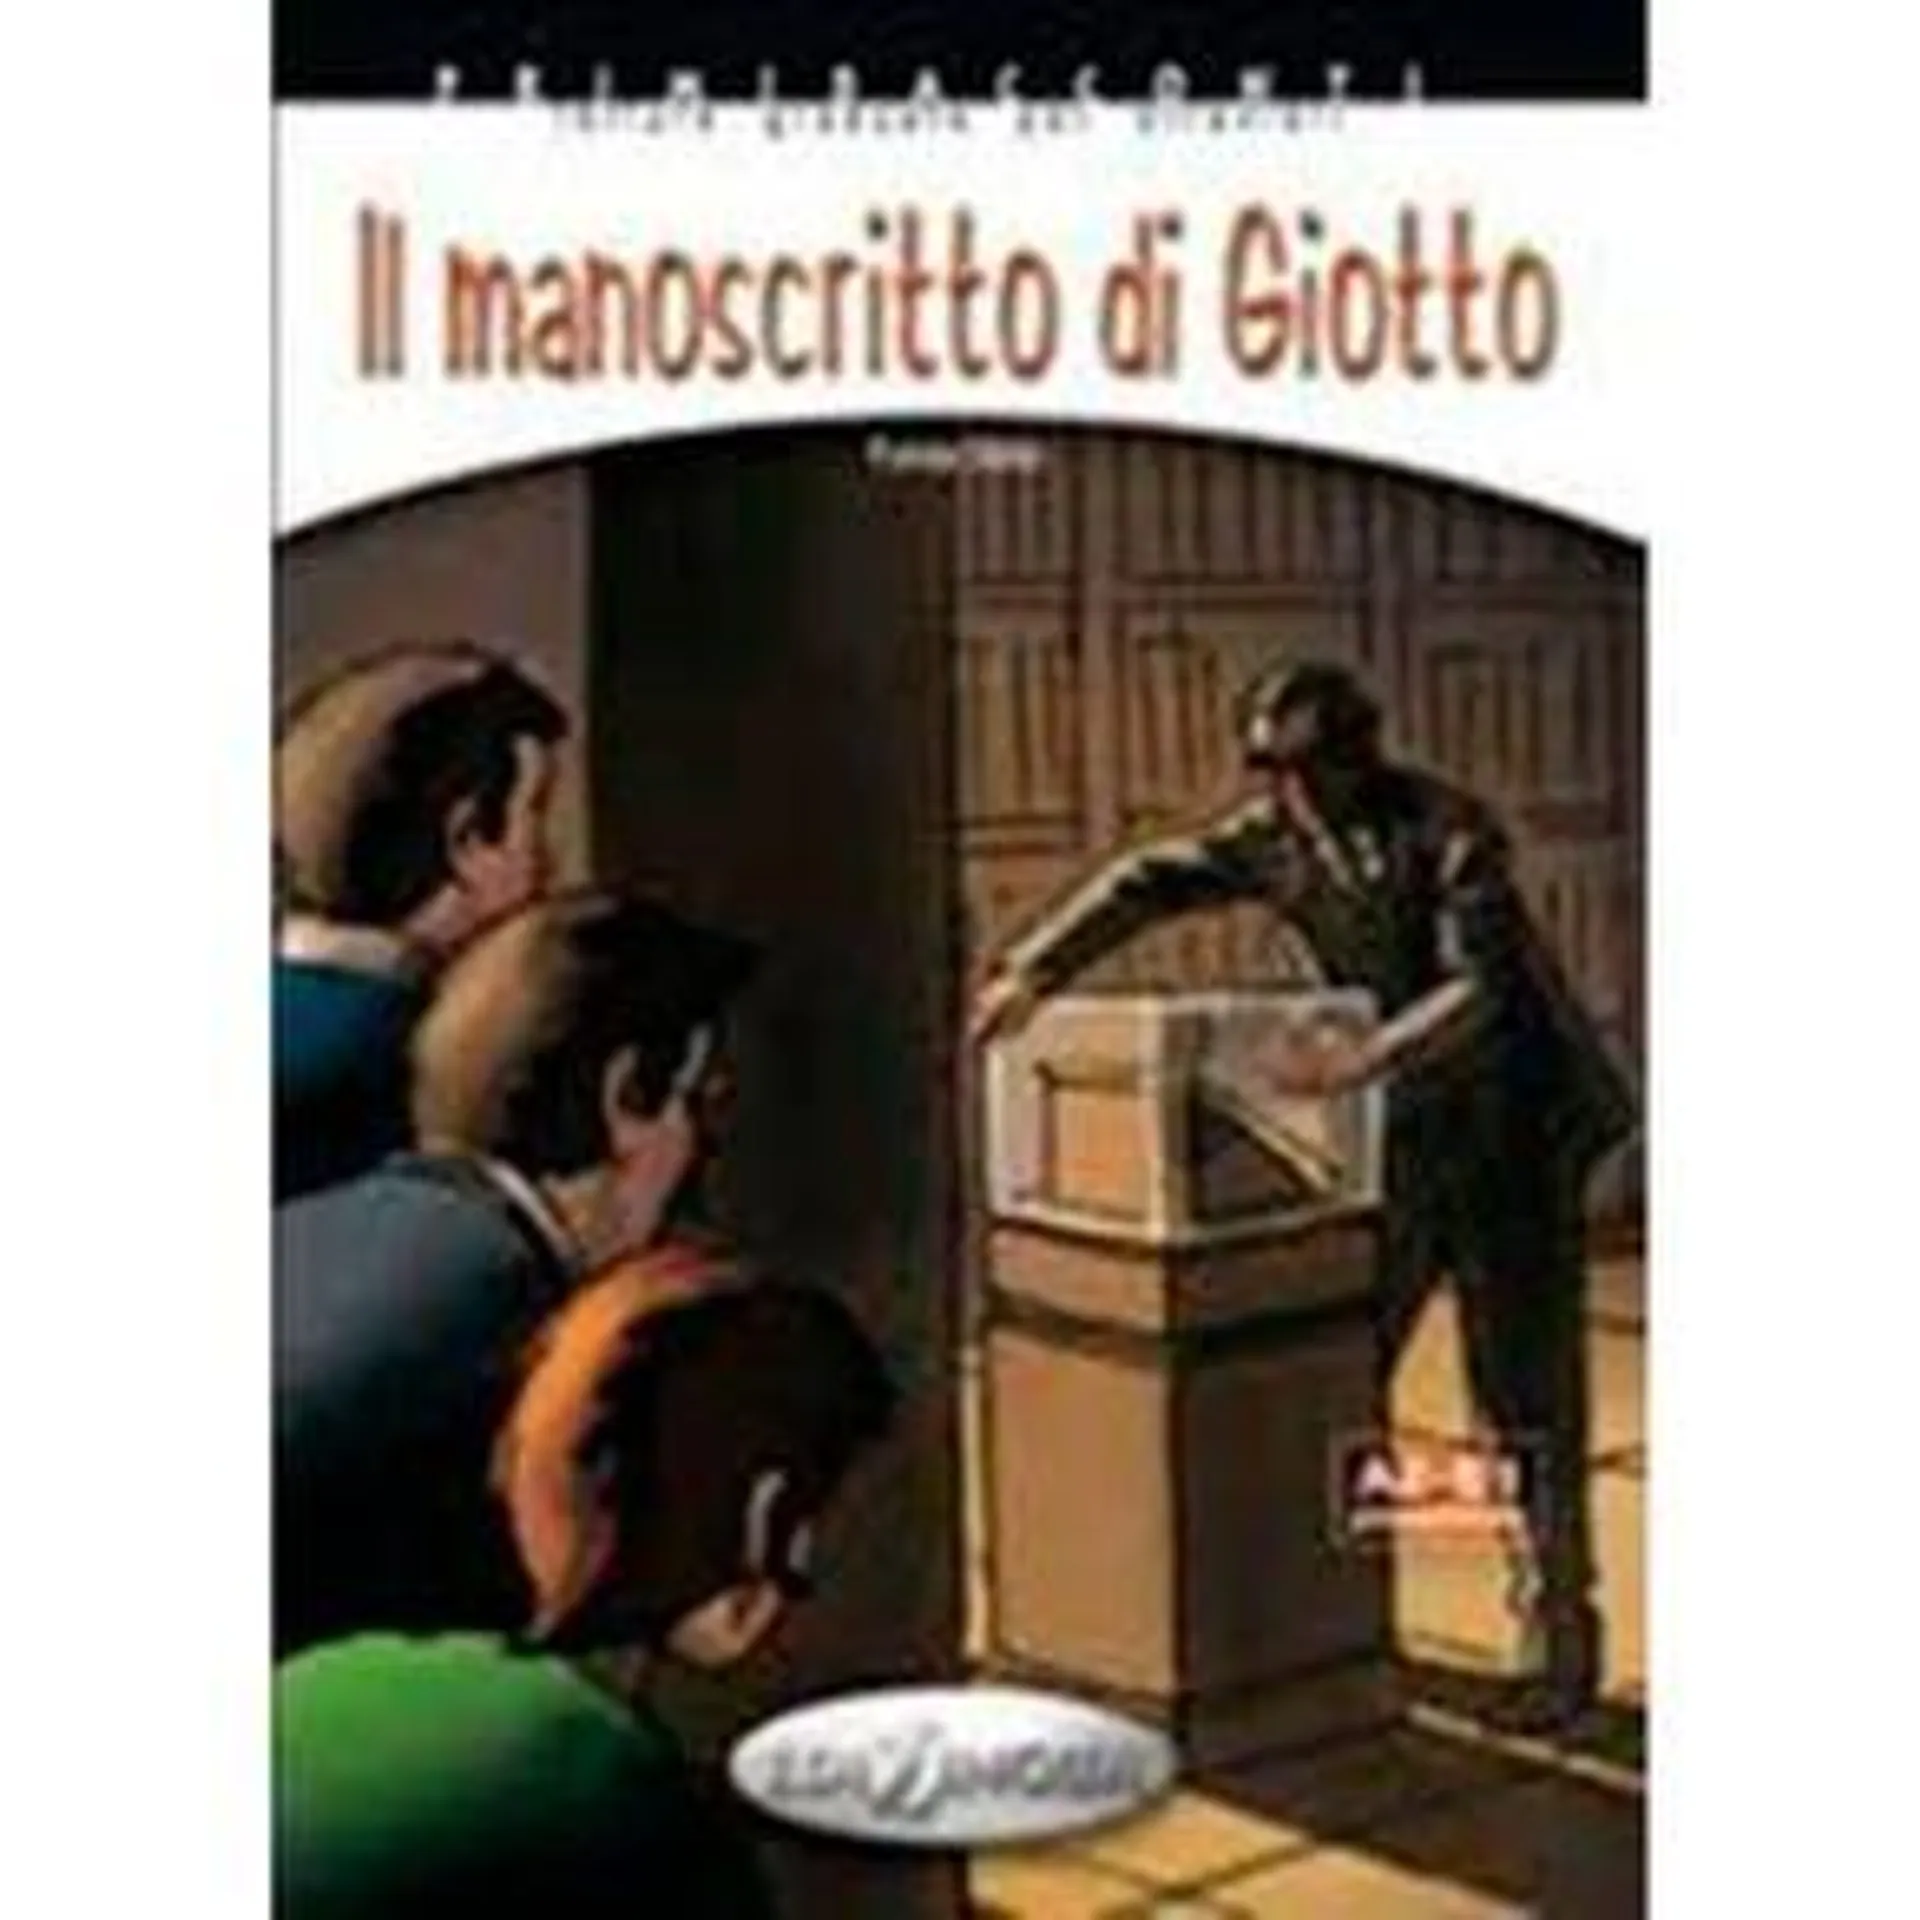 Il Manoscritto di Giotto + CD Audio (livello A2-B1)